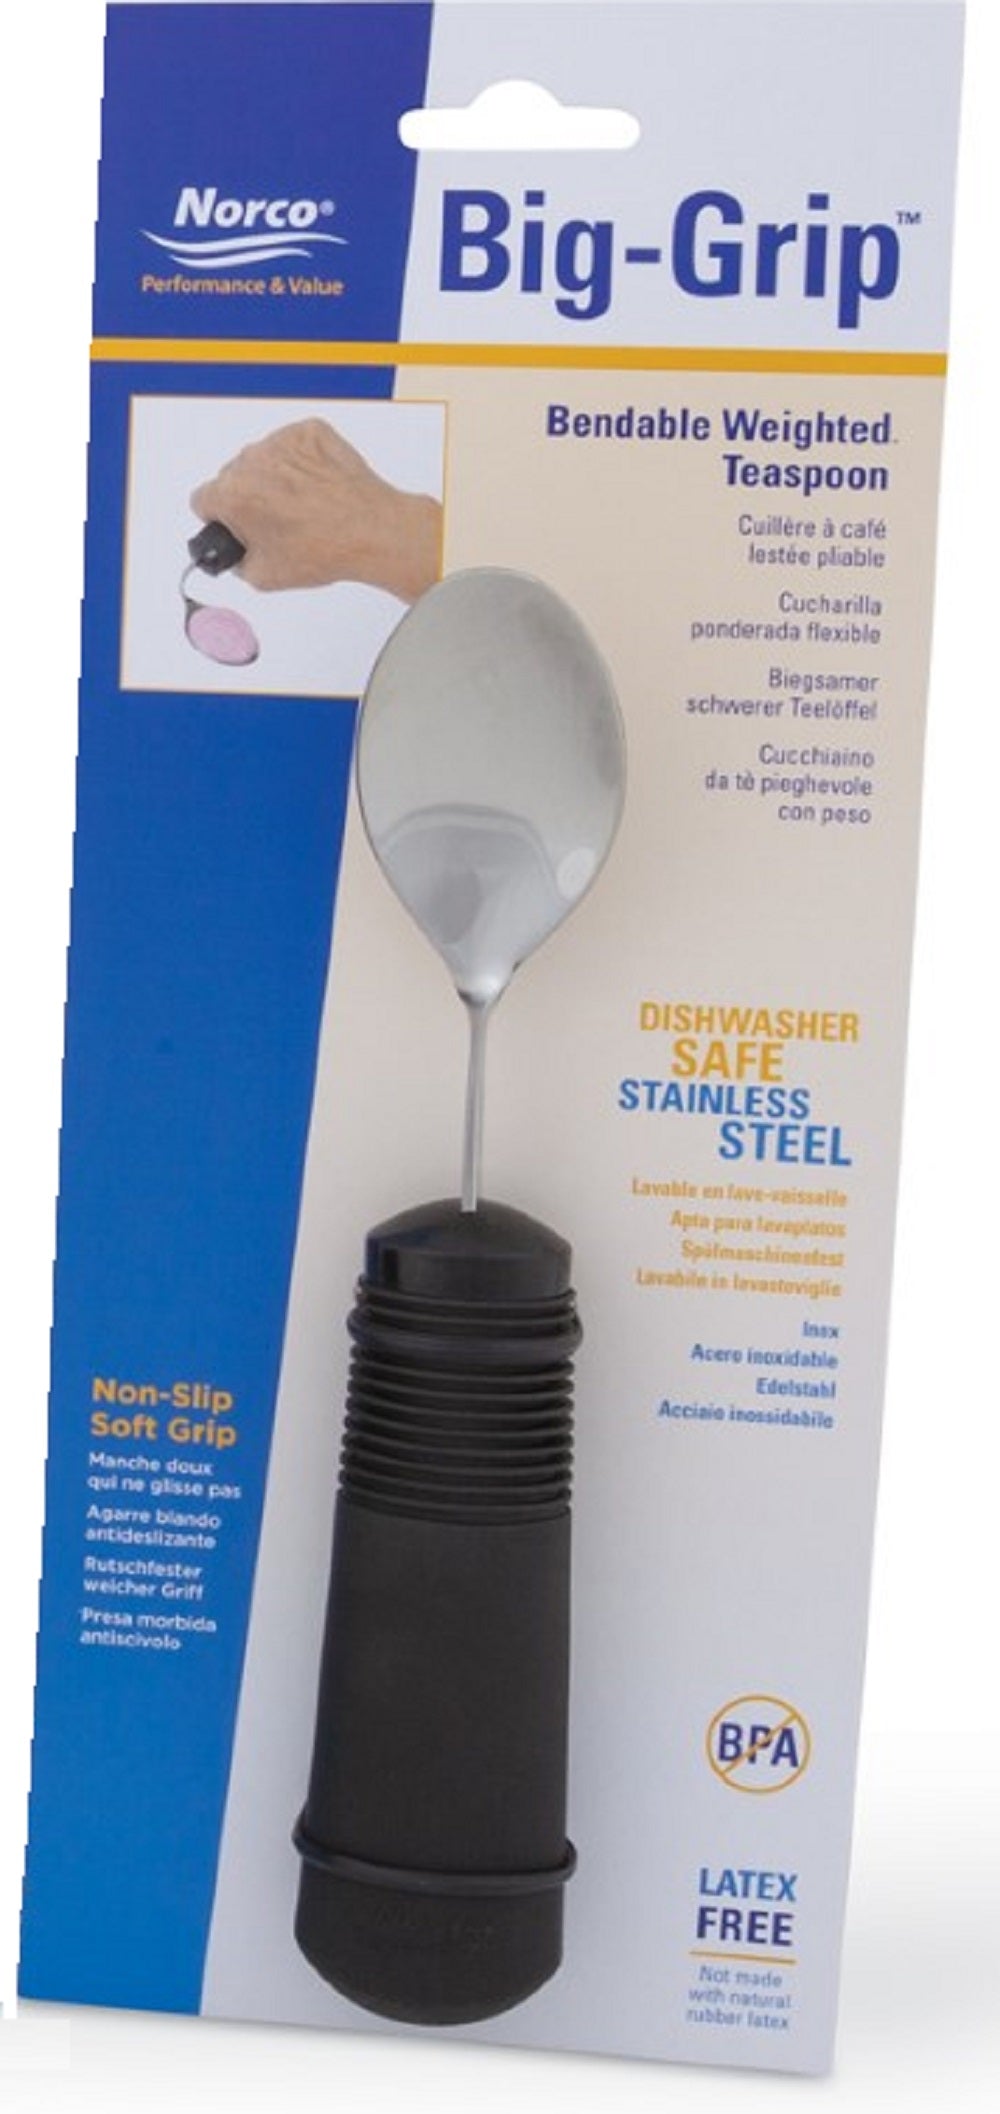 KE-Classic Bendable Eating Utensils Set : easy to grip bendable utensils